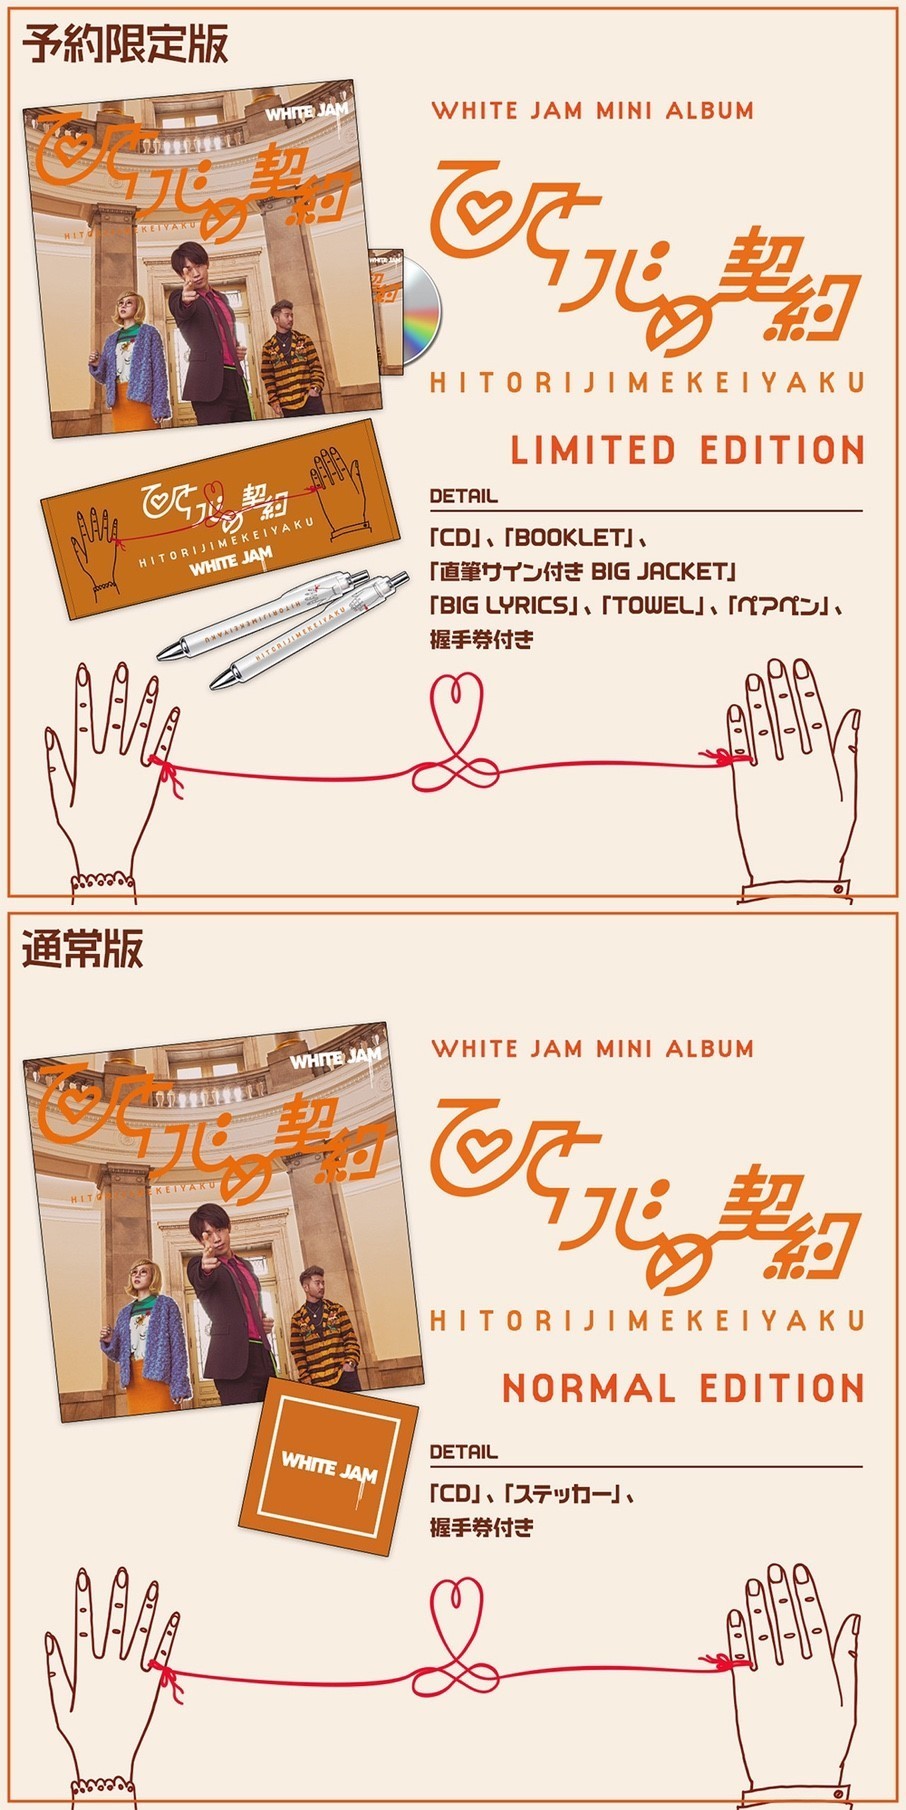 MINI ALBUM 「ひとりじめ契約」リリース情報 | WHITE JAM 公式ウェブサイト